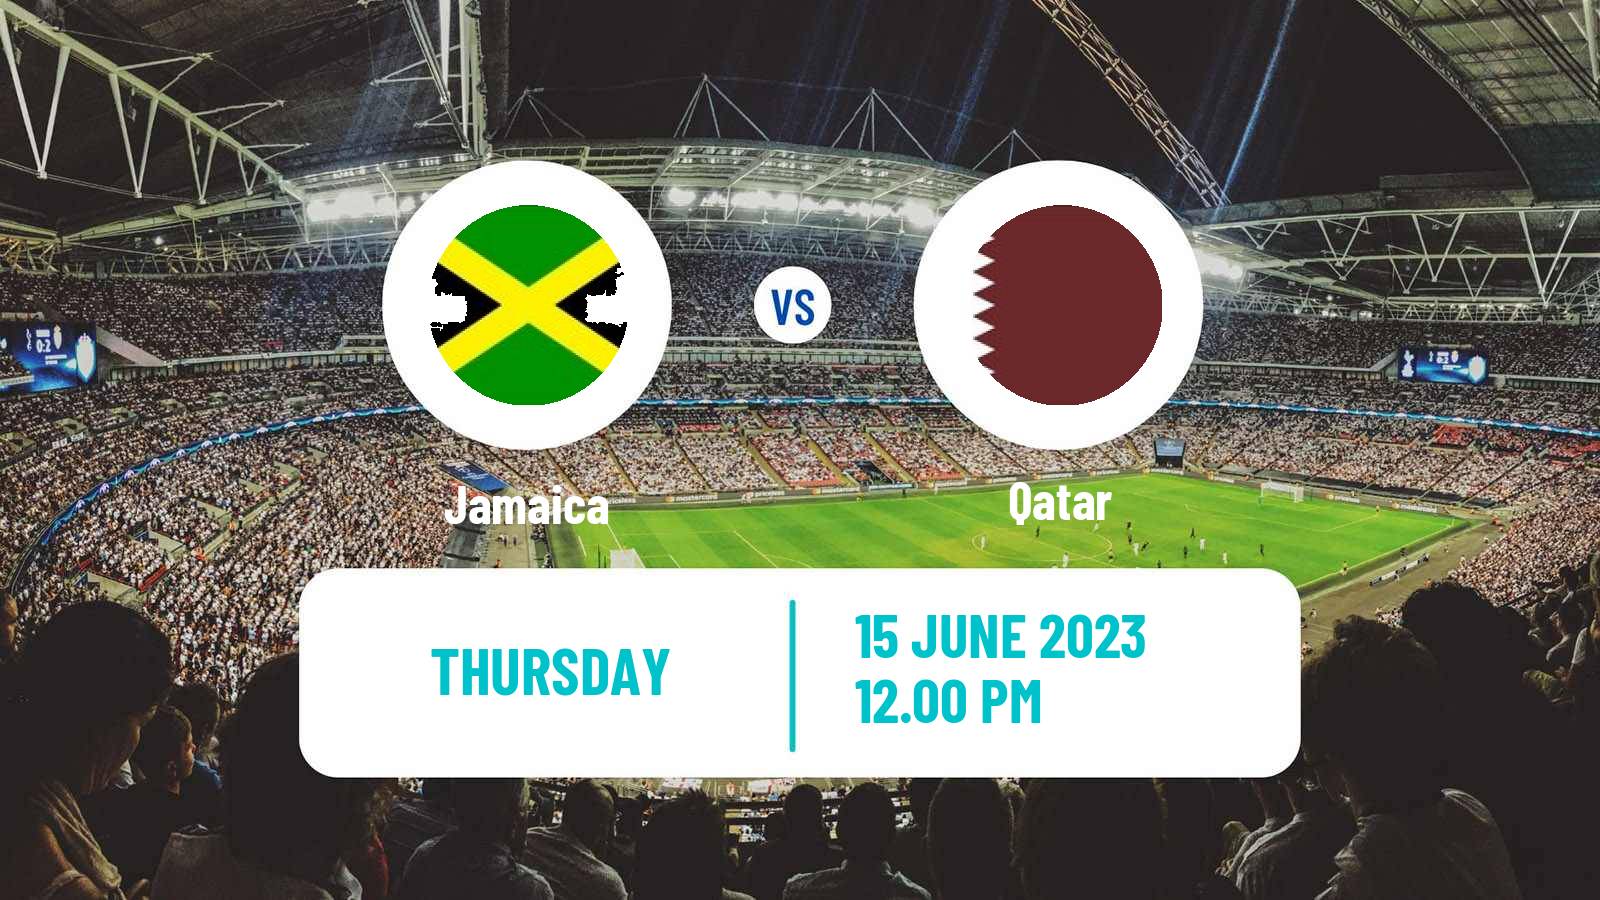 Soccer Friendly Jamaica - Qatar